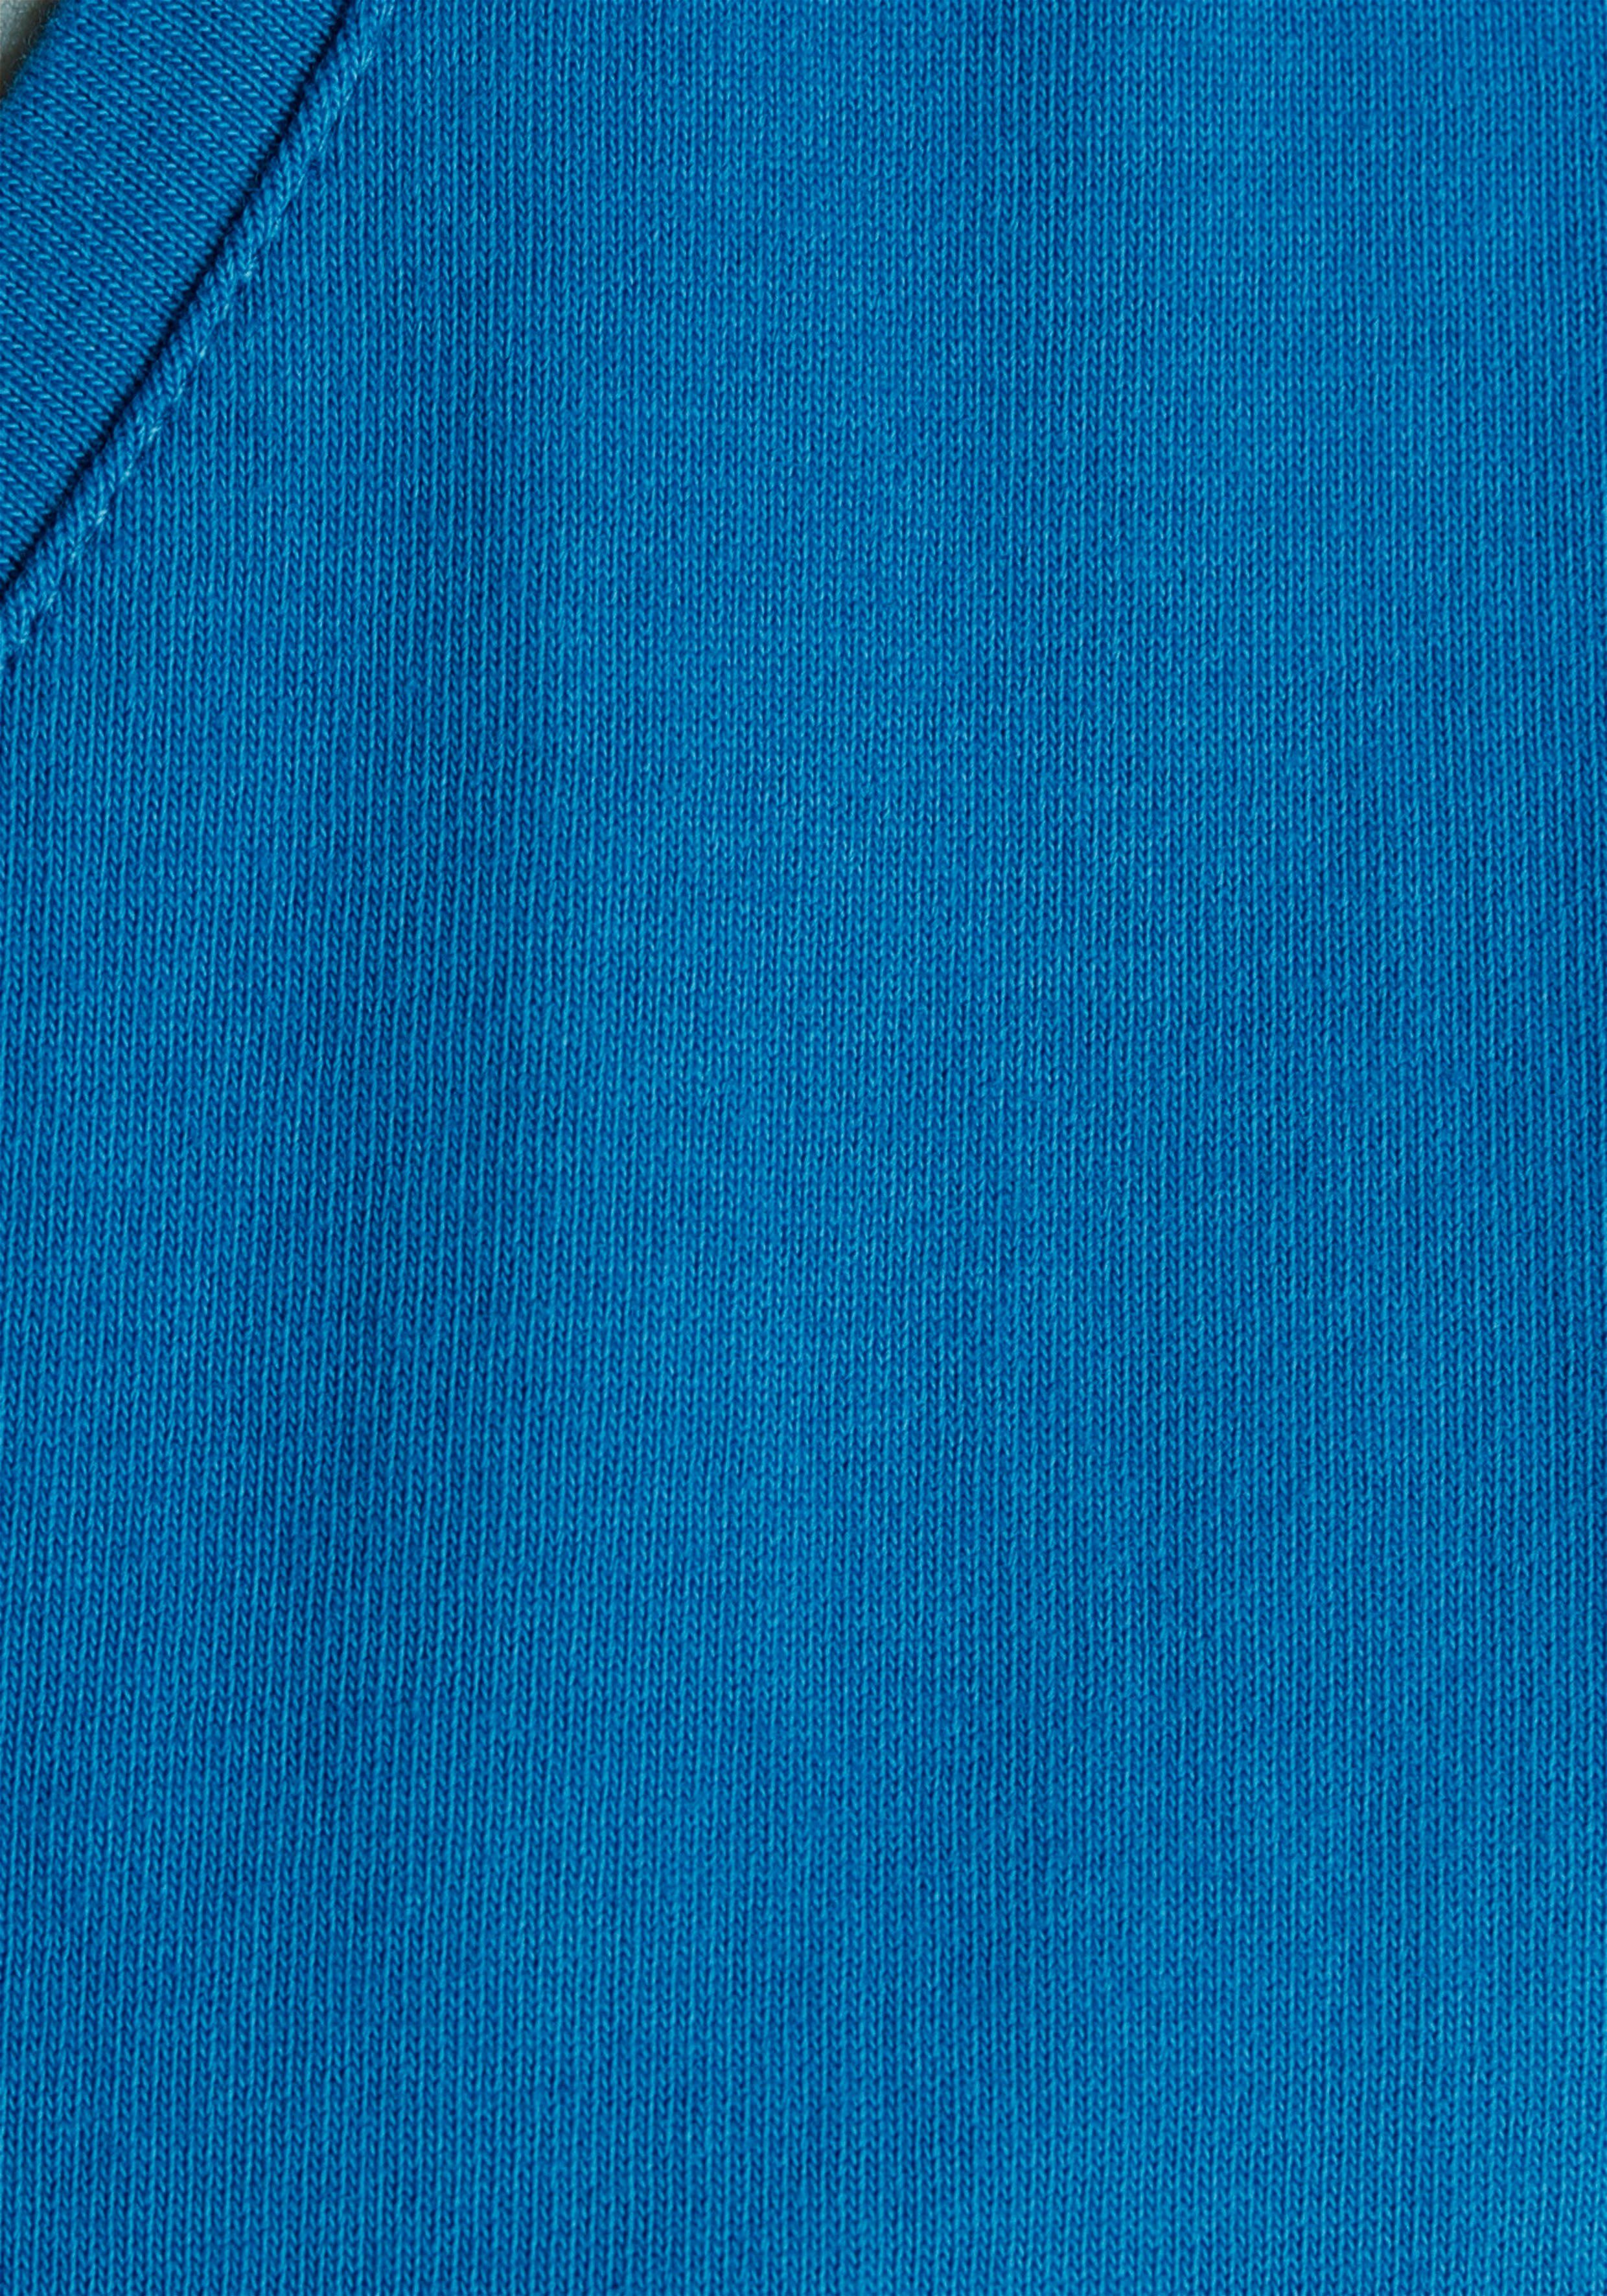 OTTO products Jerseykleid GOTS zertifiziert Blau -CIRCULAR Azur COLLECTION